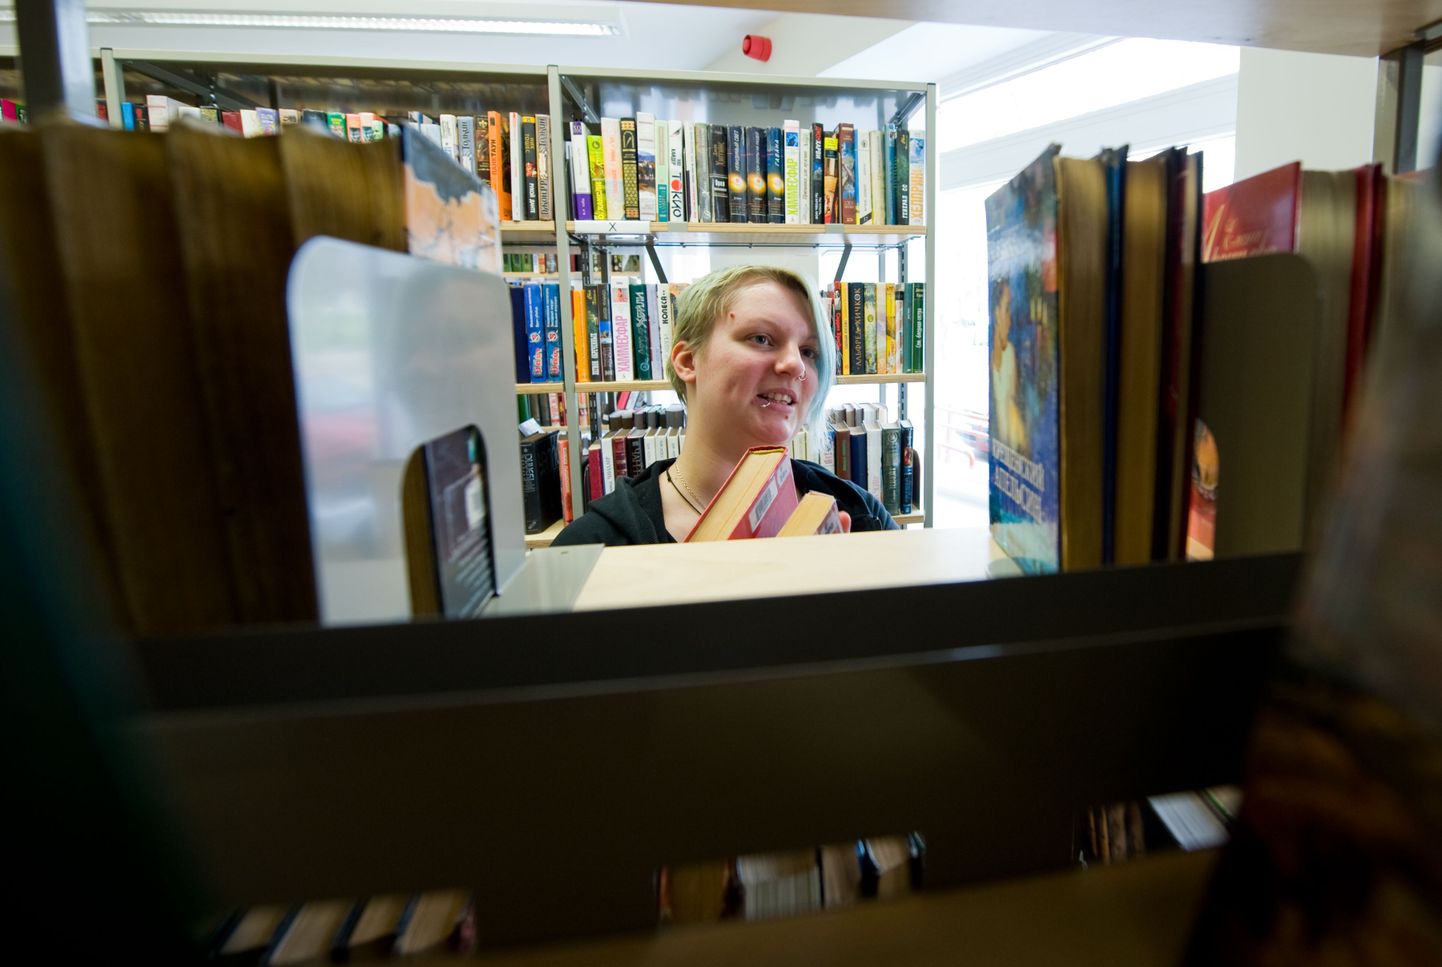 Keskraamatukogu Pelgulinna haruraamatukogu lugemissaali töötaja Annike Redi näitab, et riiulitel haigutavad tühjad kohad, sest lugejad ei ole raamatuid õigel ajal tagasi toonud.